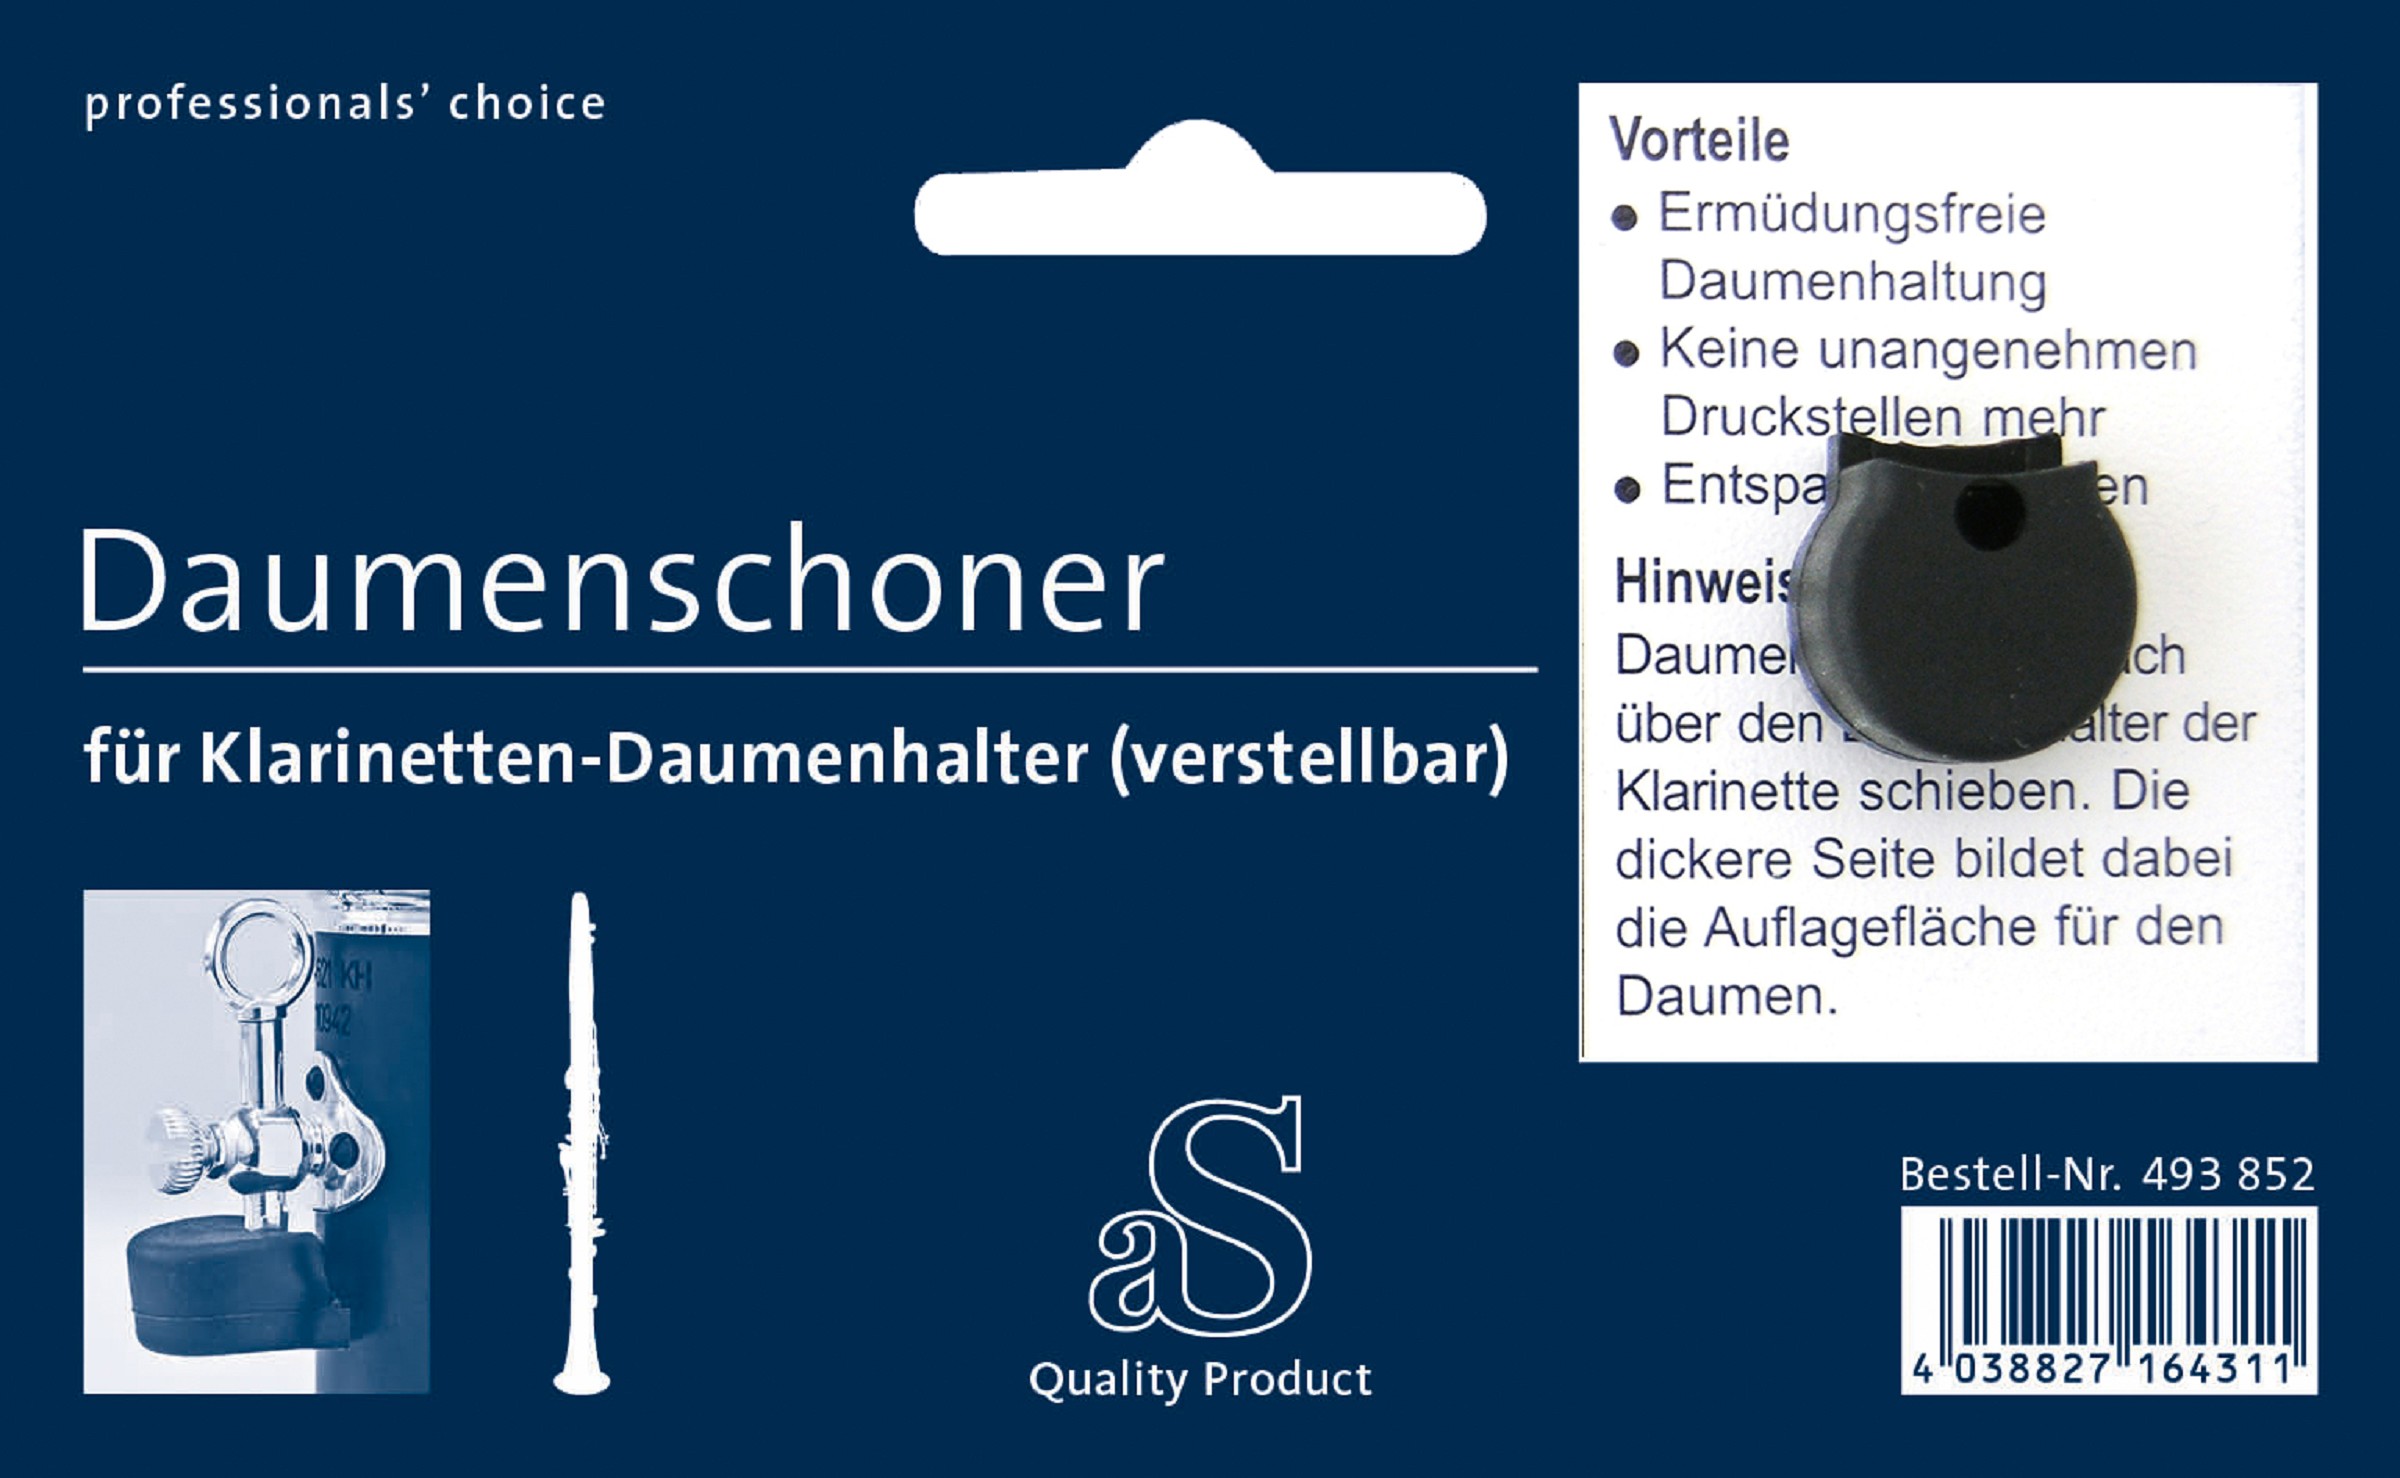 A&S Daumenschoner für Klarinette